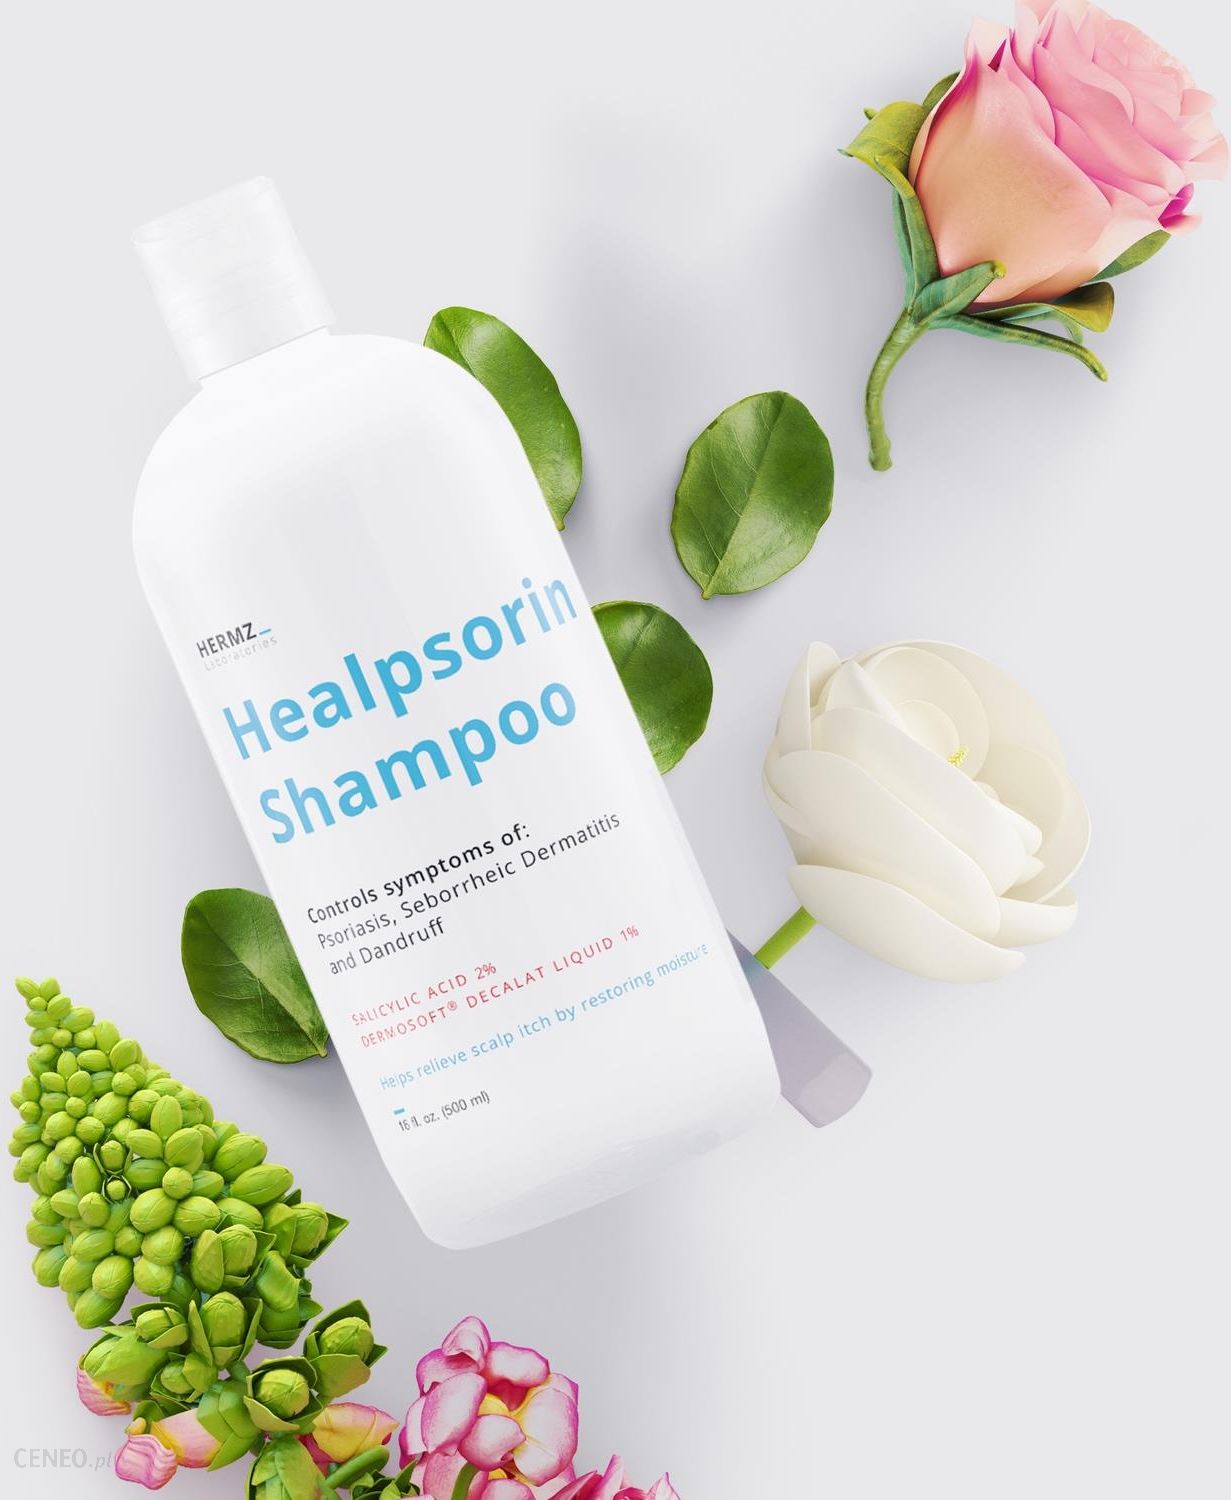 healpsorin szampon gdzie kupić